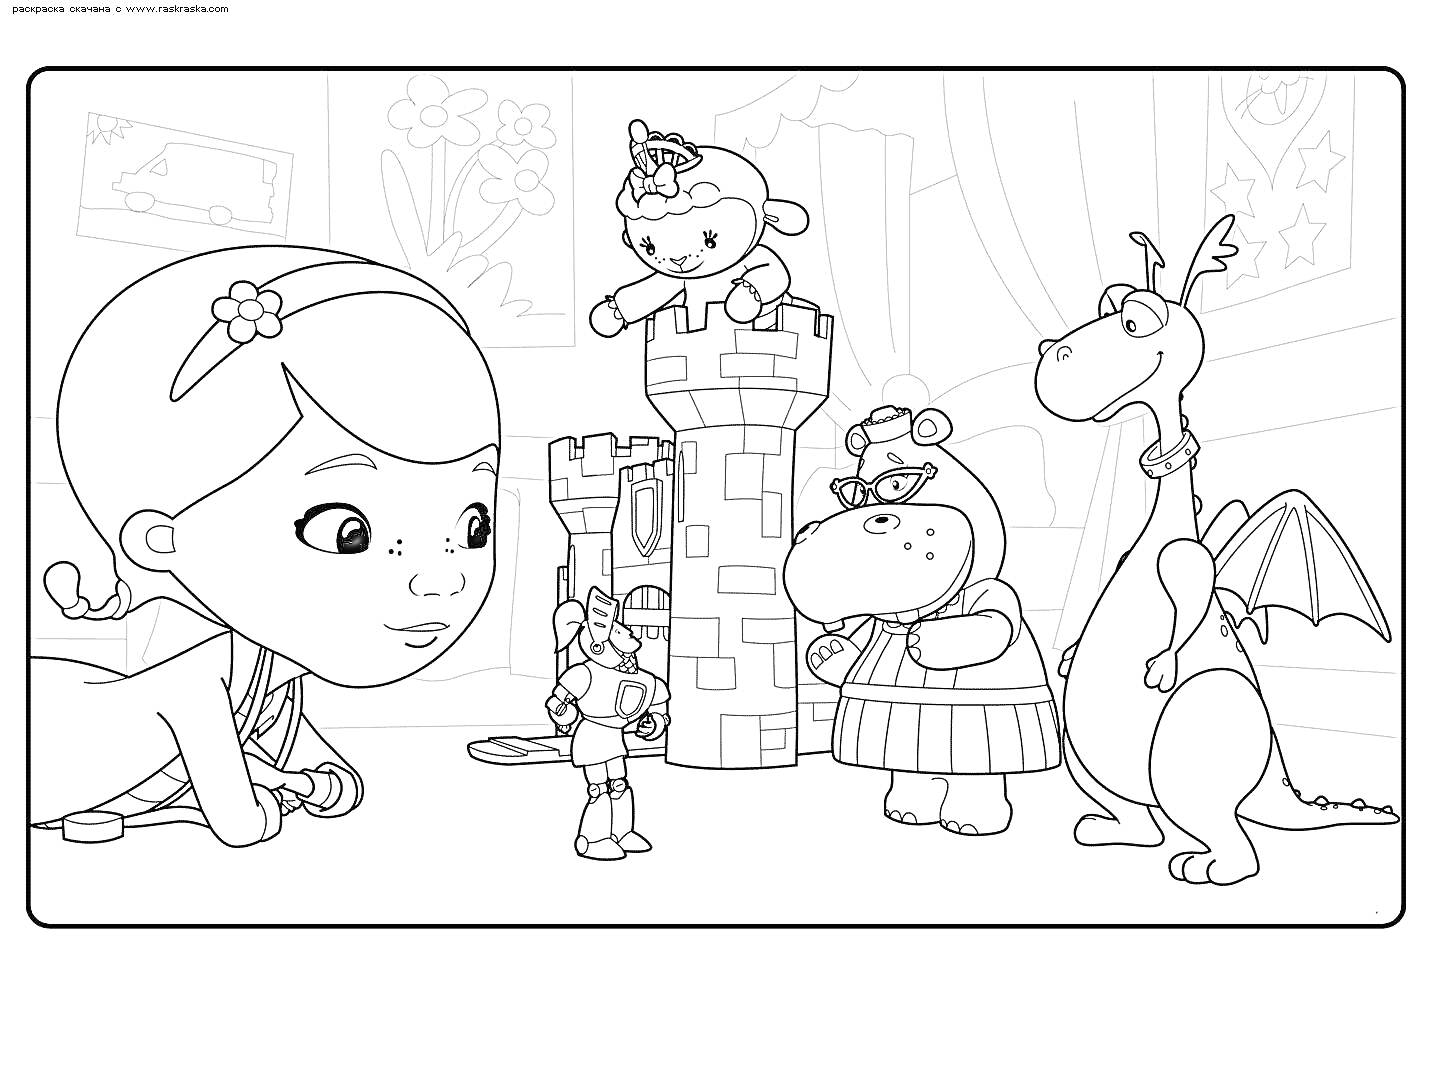 Раскраска Доктор Плюшева с друзьями: принцесса Ягнёнок, хиппопотам в платье, дракон с крыльями и мальчик-рыцарь возле замка